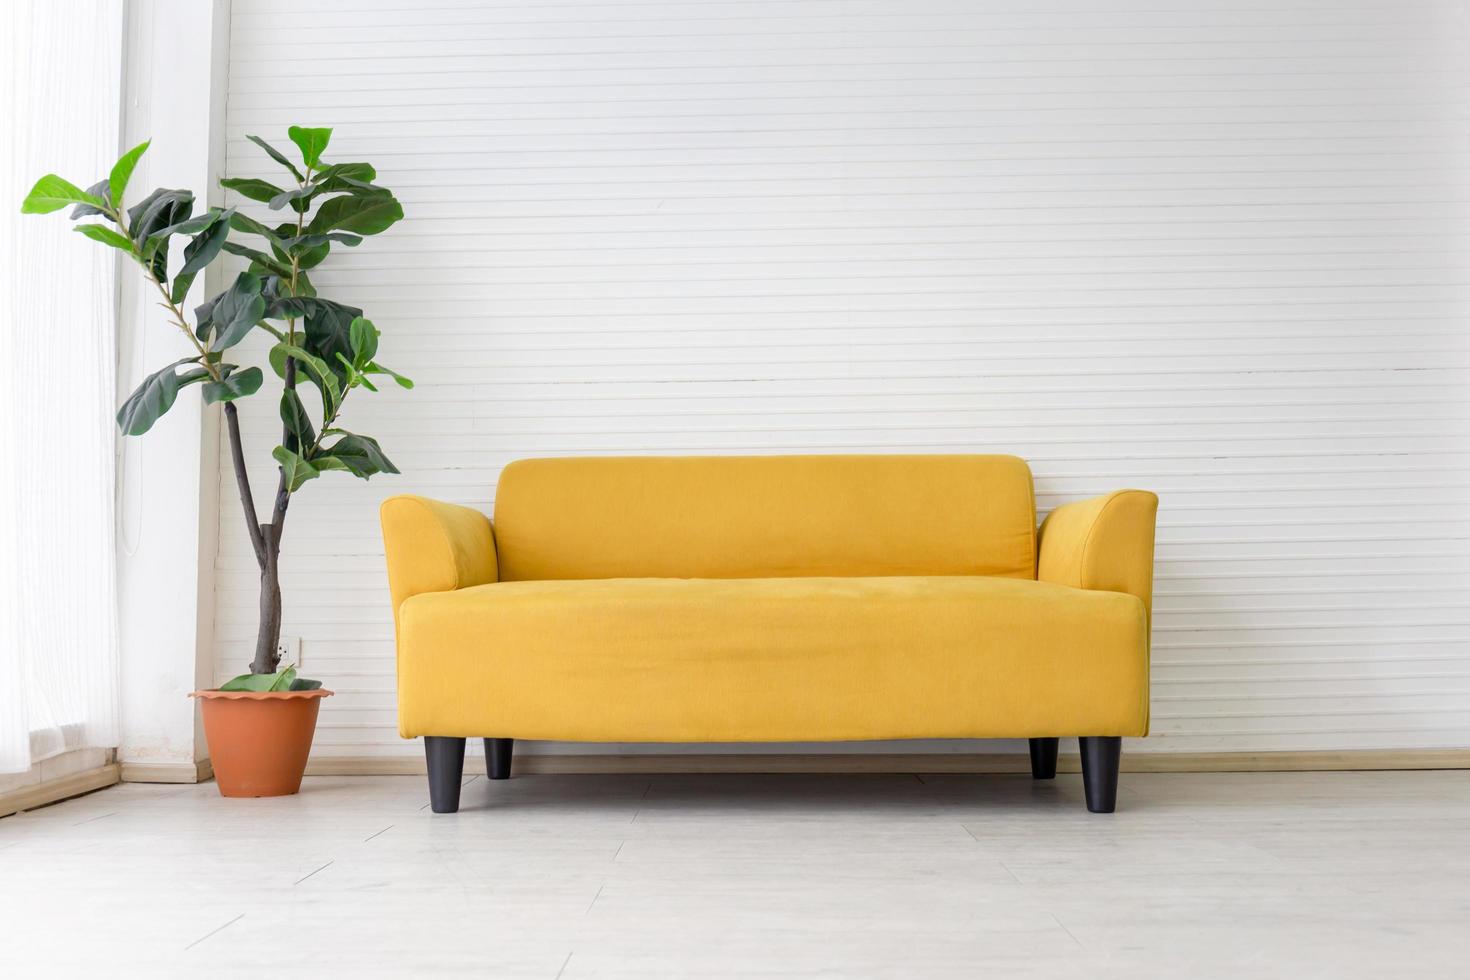 salón blanco interior con moderno sofá de tela amarilla con fondo de pared blanco vacío foto